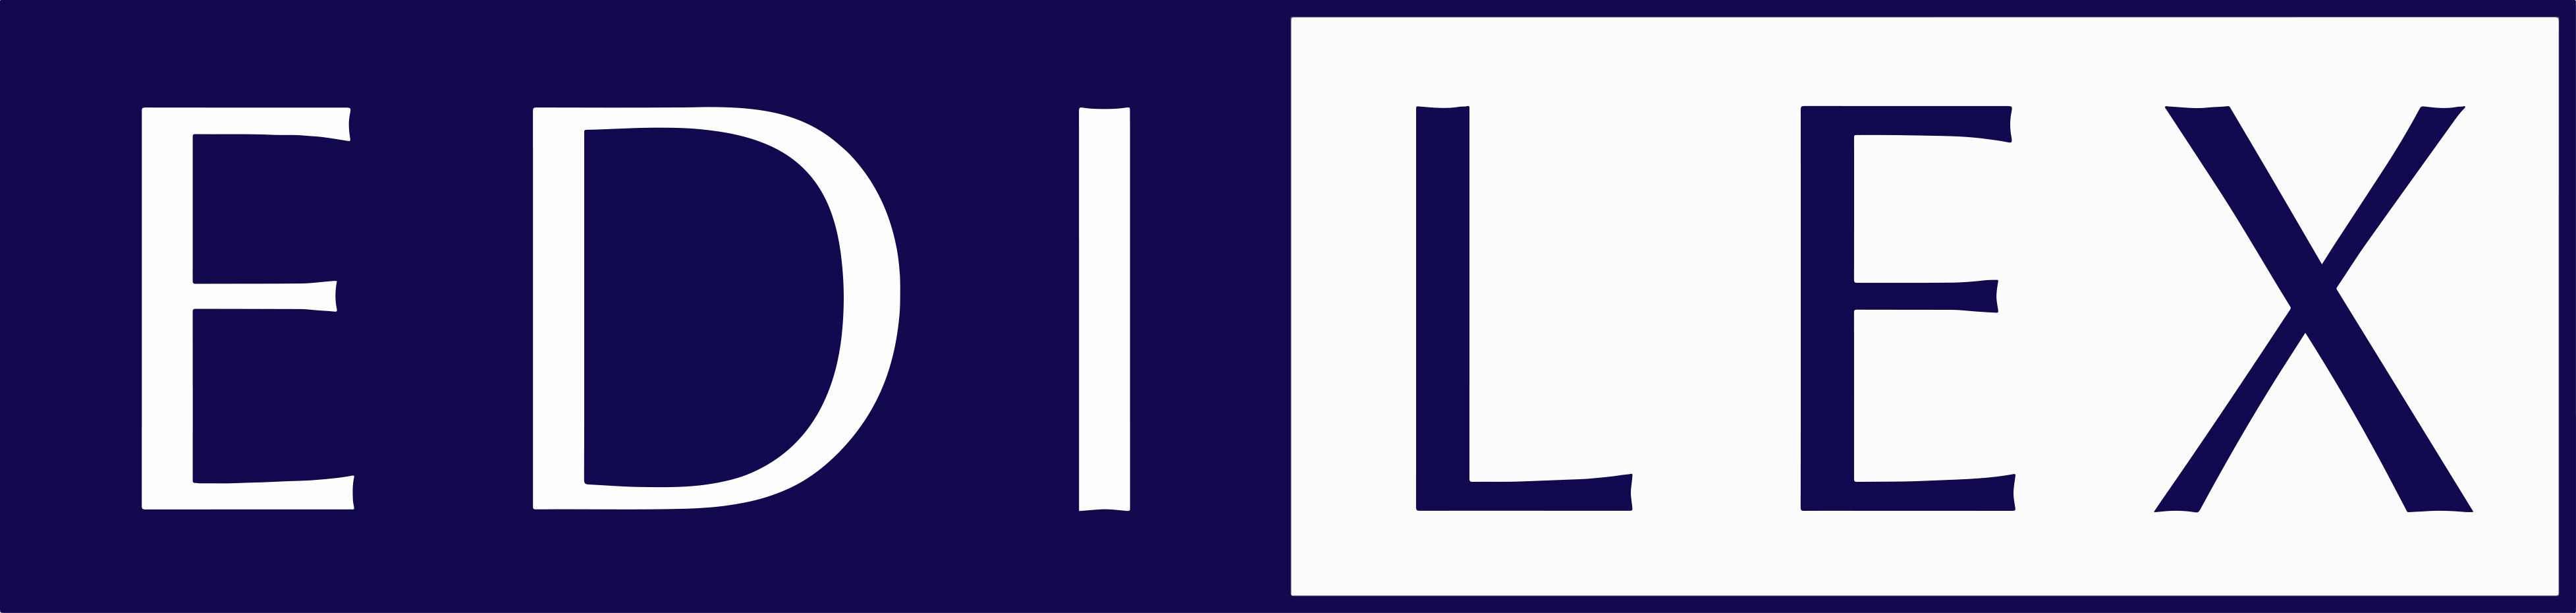 Edilex logo